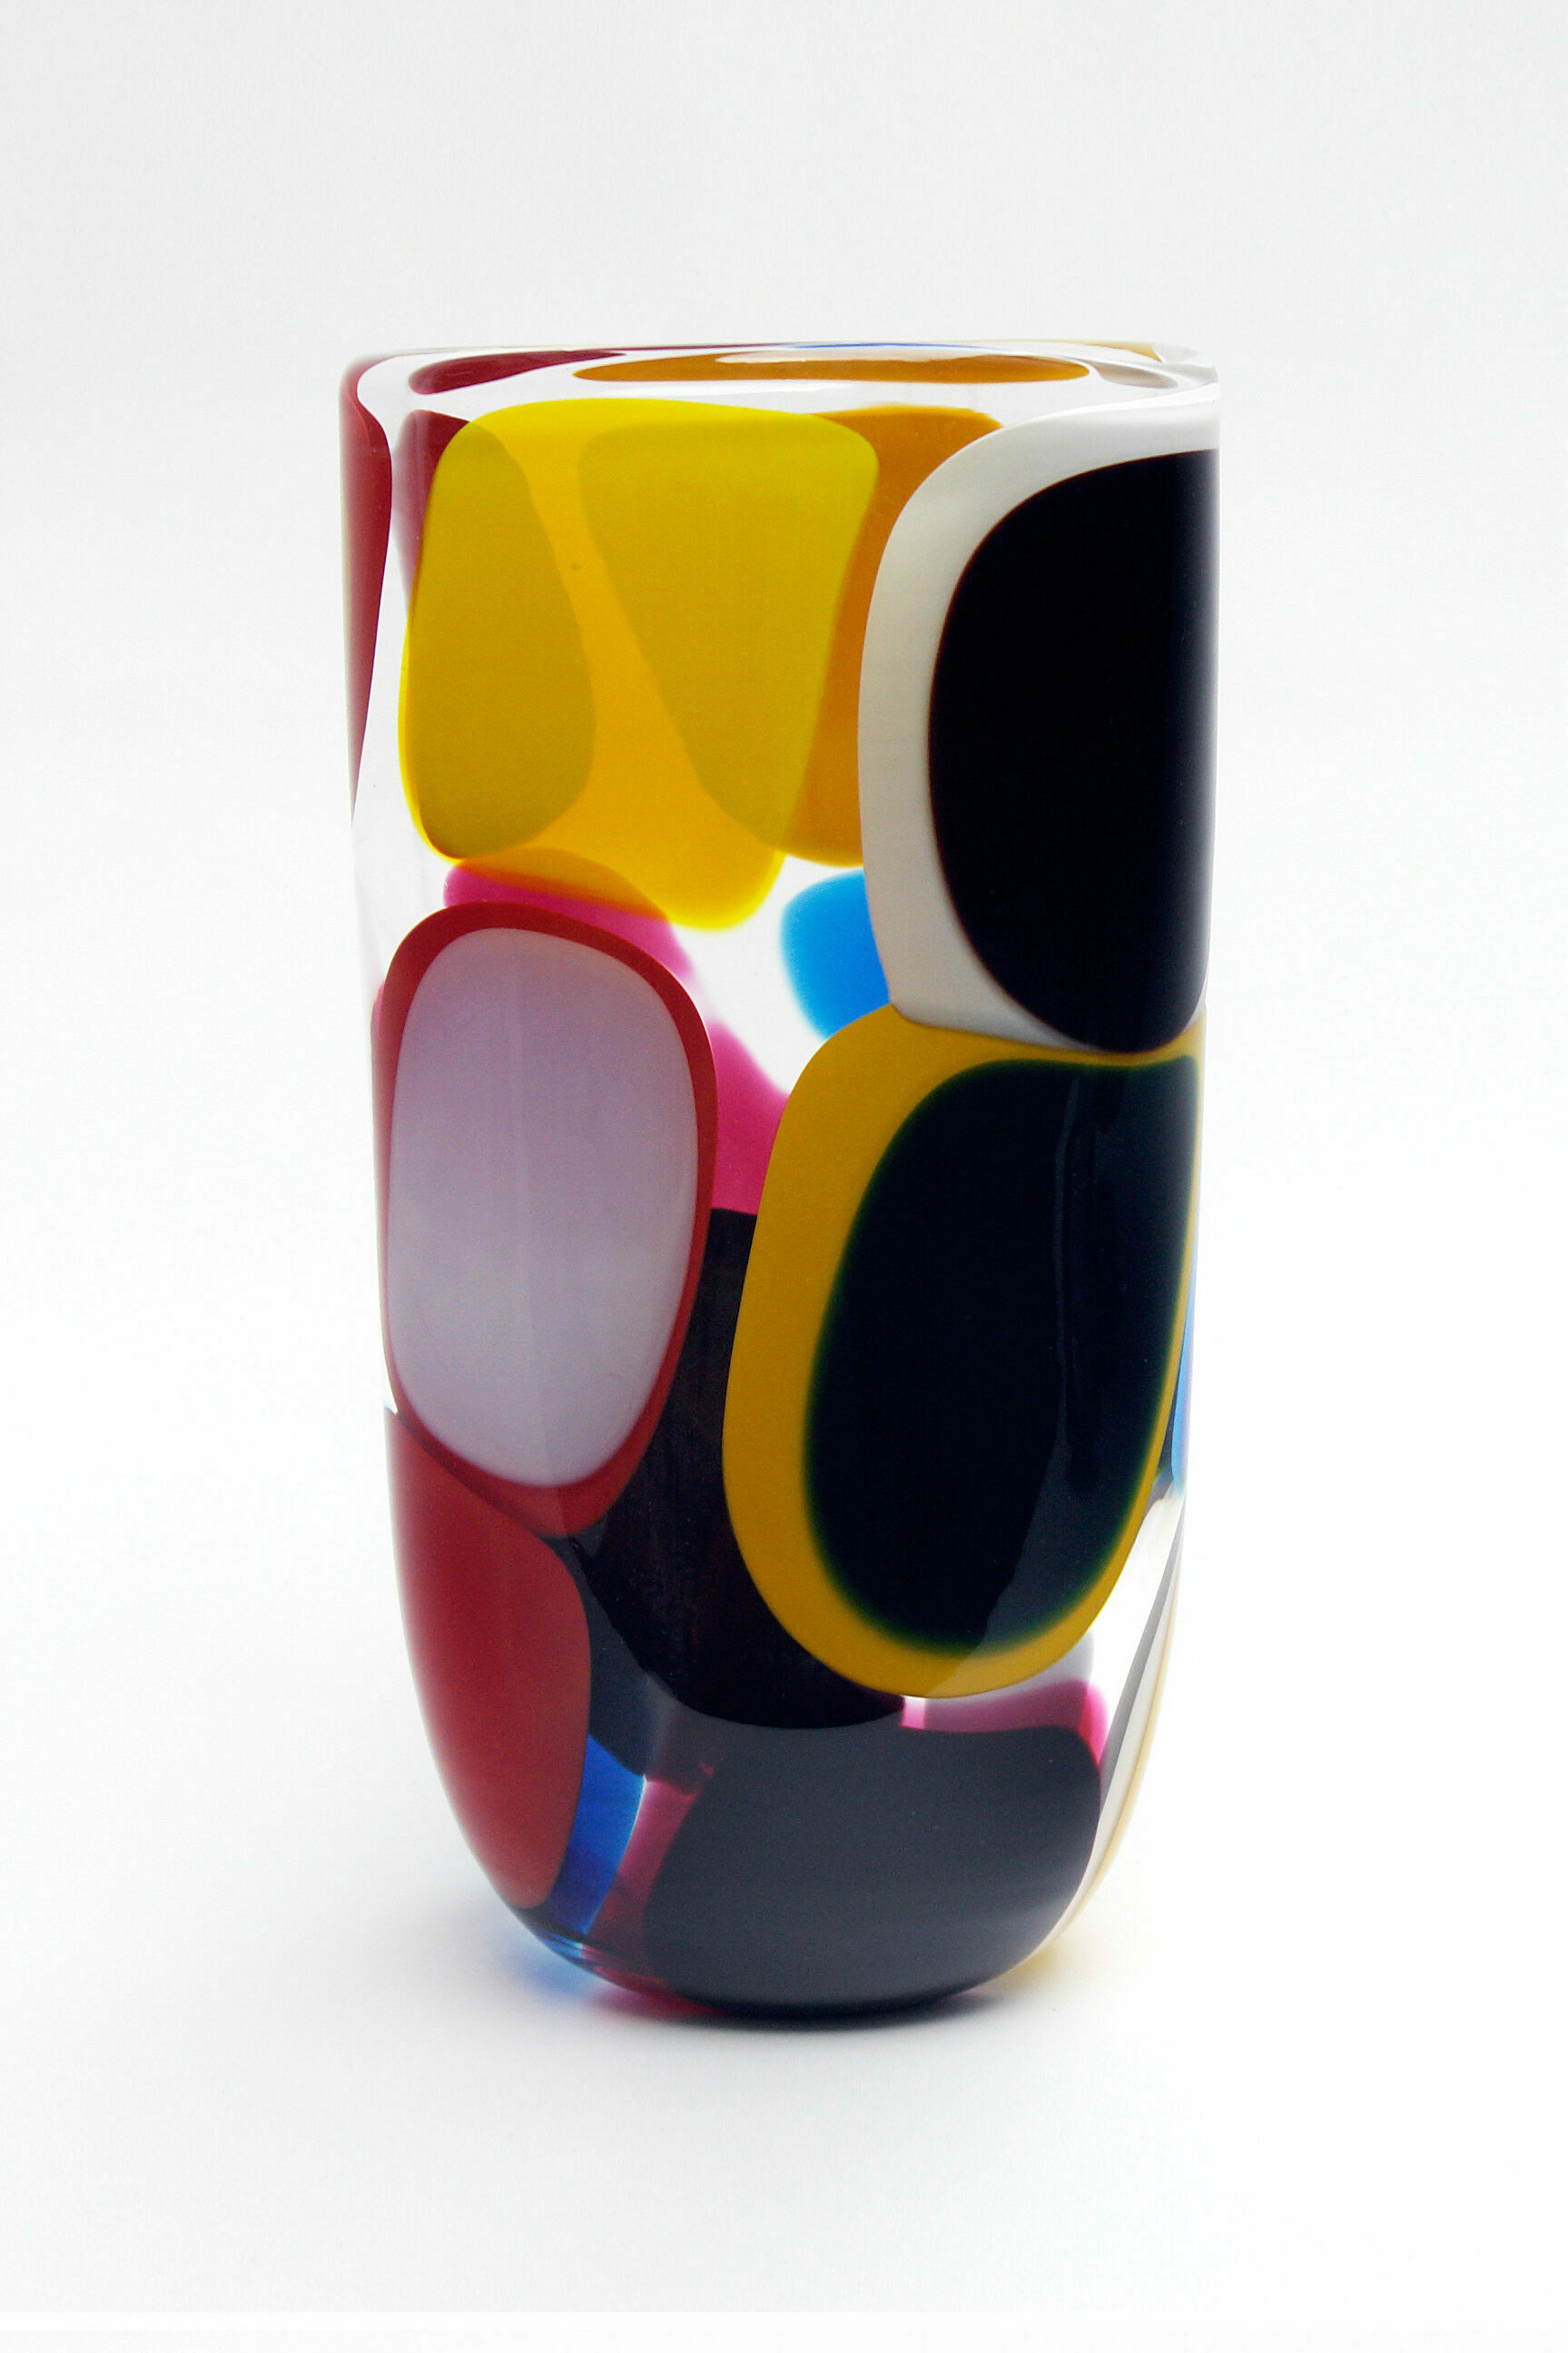 glasobjekte martin potsch vase design inneneinrichtung einrichtungsidee